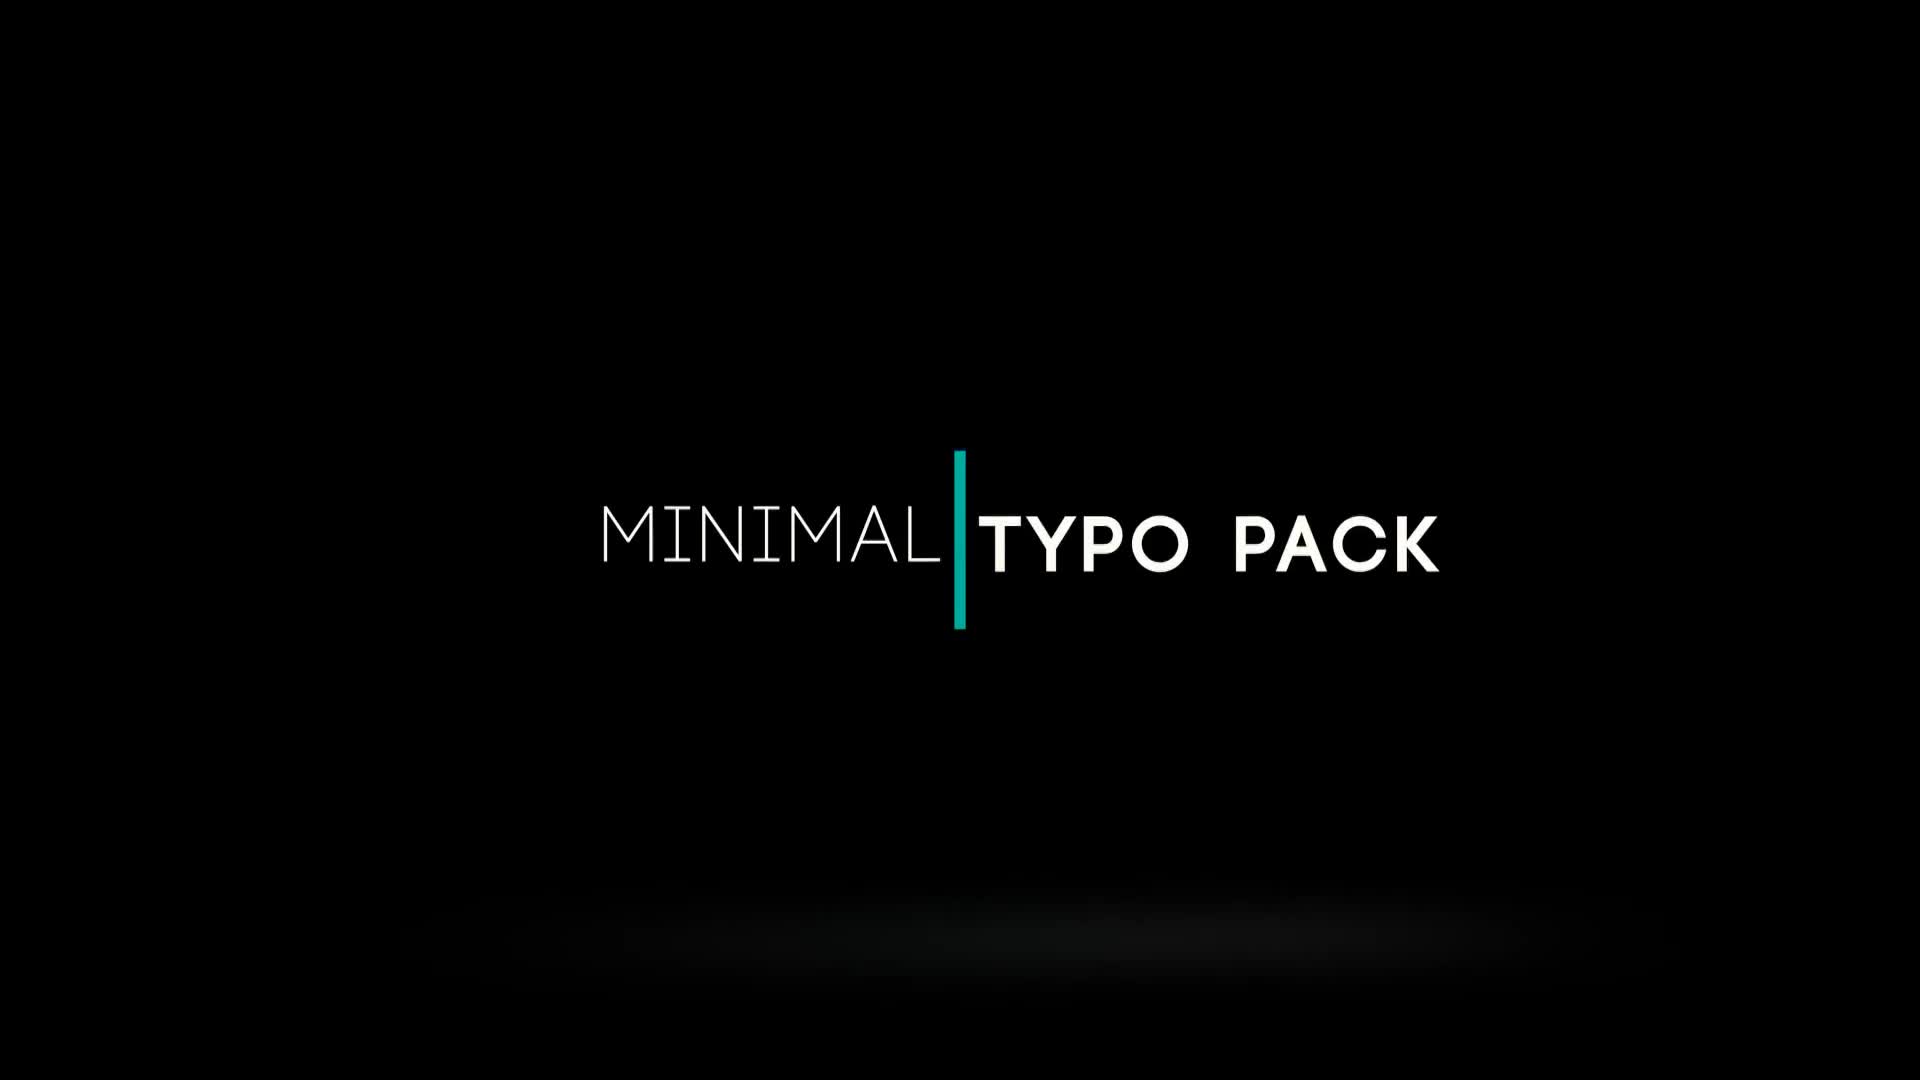 Minimal Typo Premiere Pro Videohive 38315318 Premiere Pro Image 1